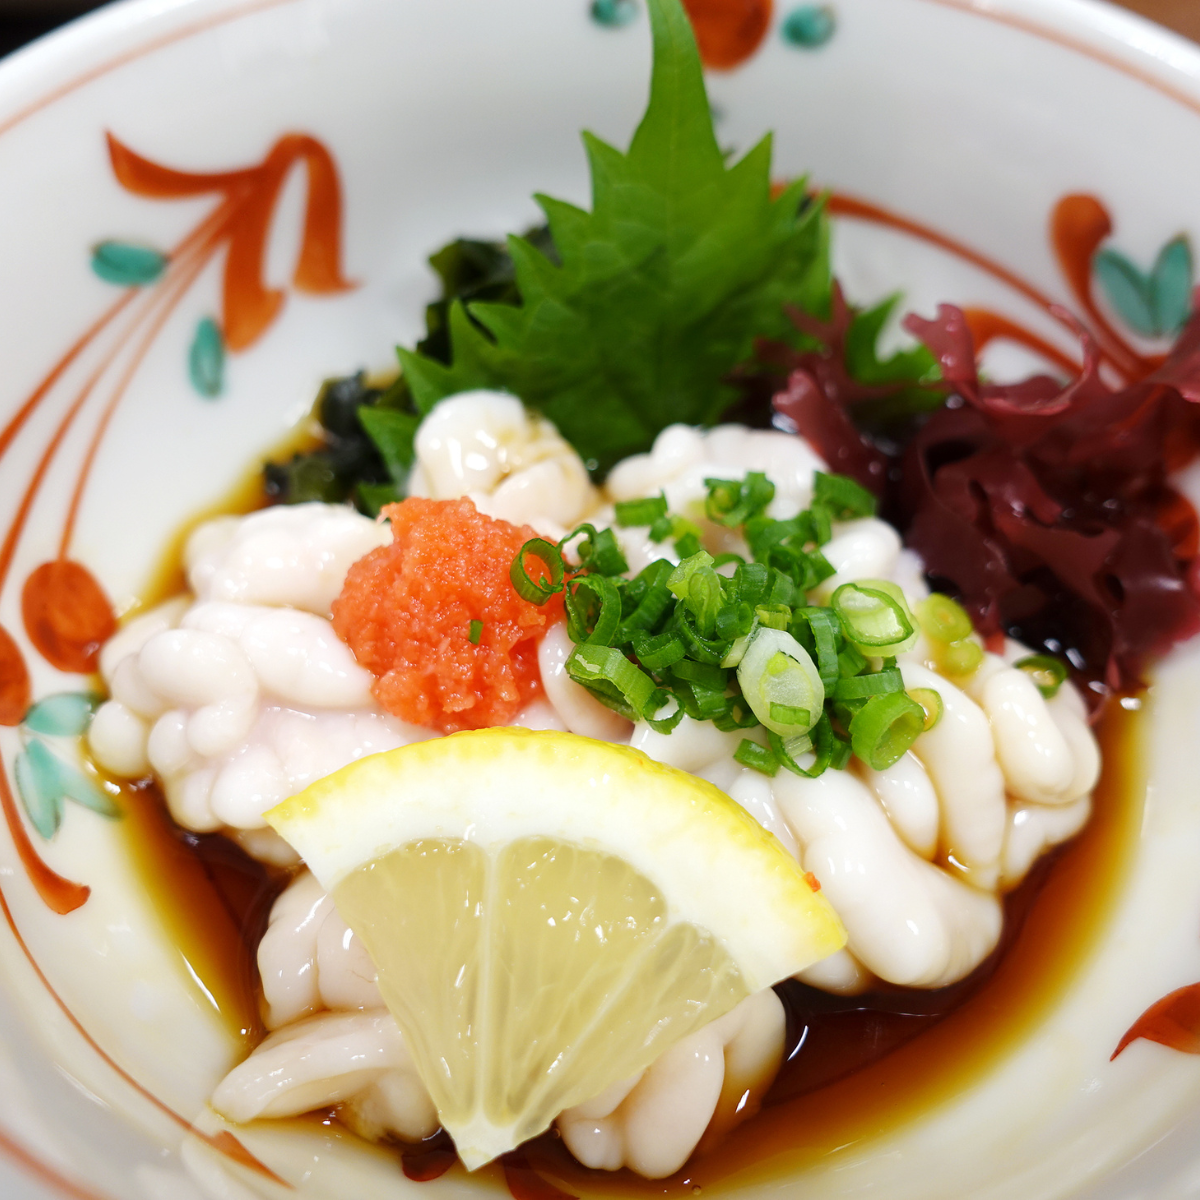 Sốt Ponzu Nhật Bản Yamamori 1L | Ăn Kèm Hàu, Sashimi, Món Nhật